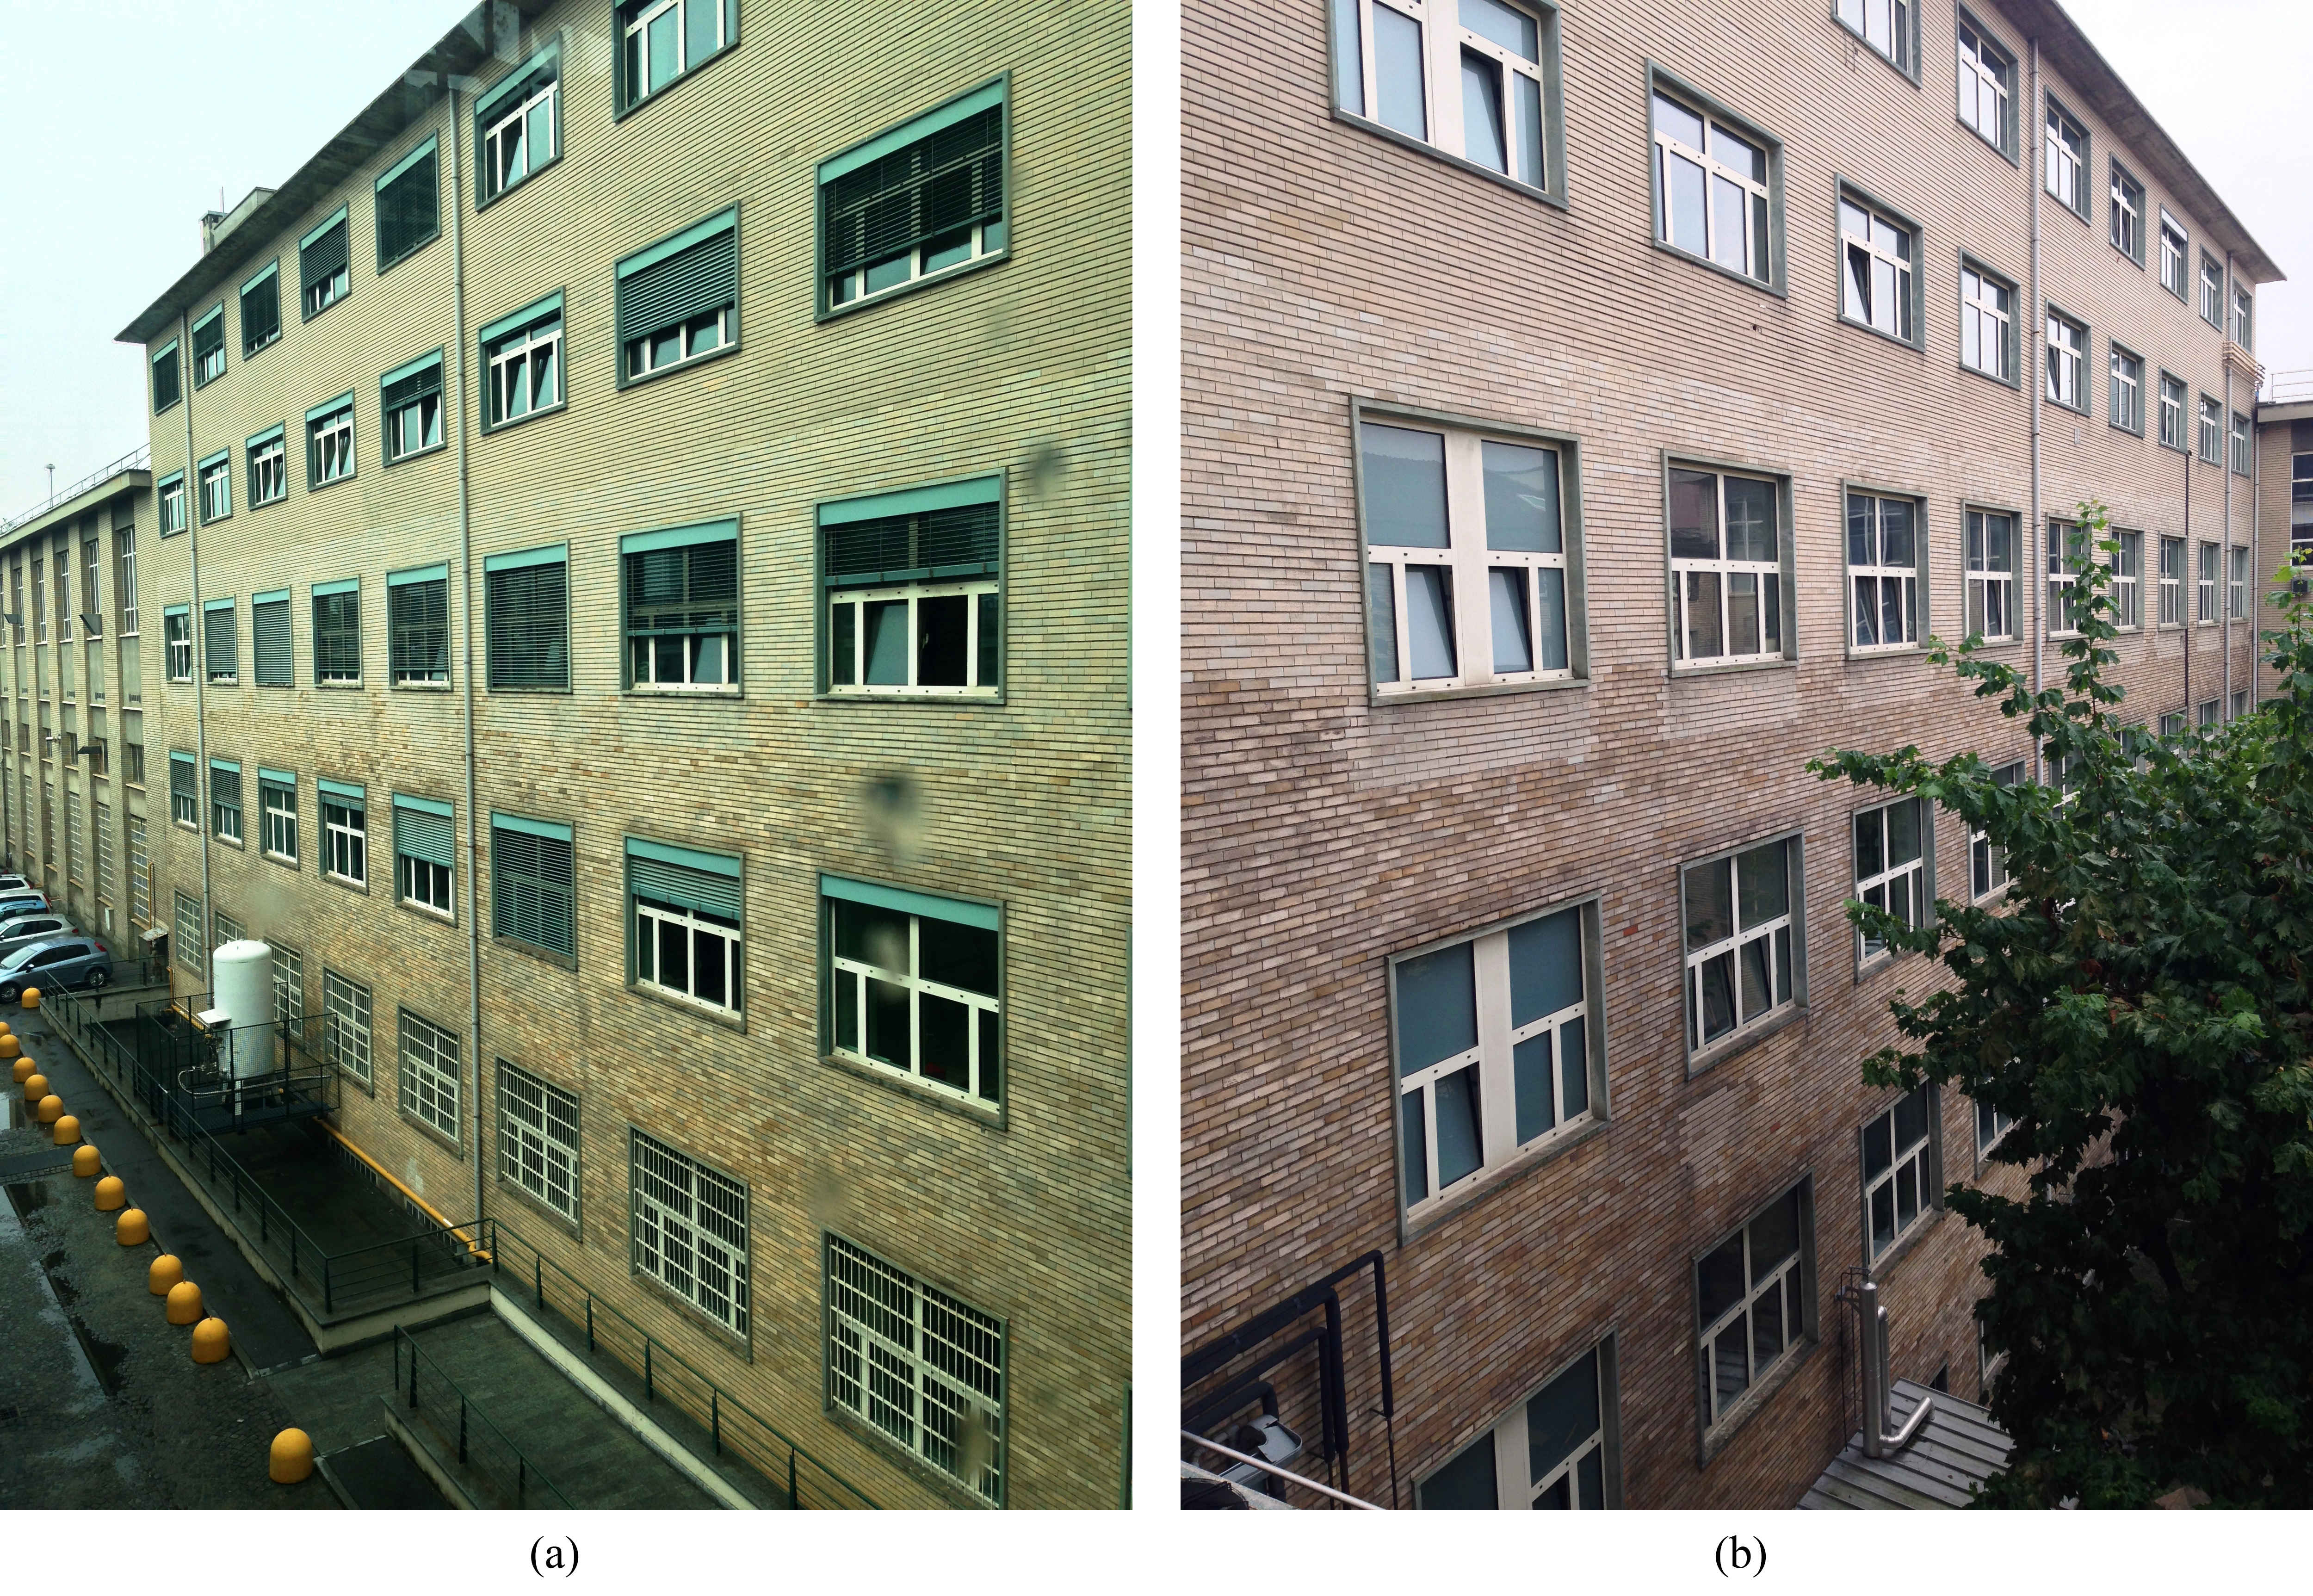 Images of the DENERG building façades: (a) south-facing façade and (b) north-facing façade.